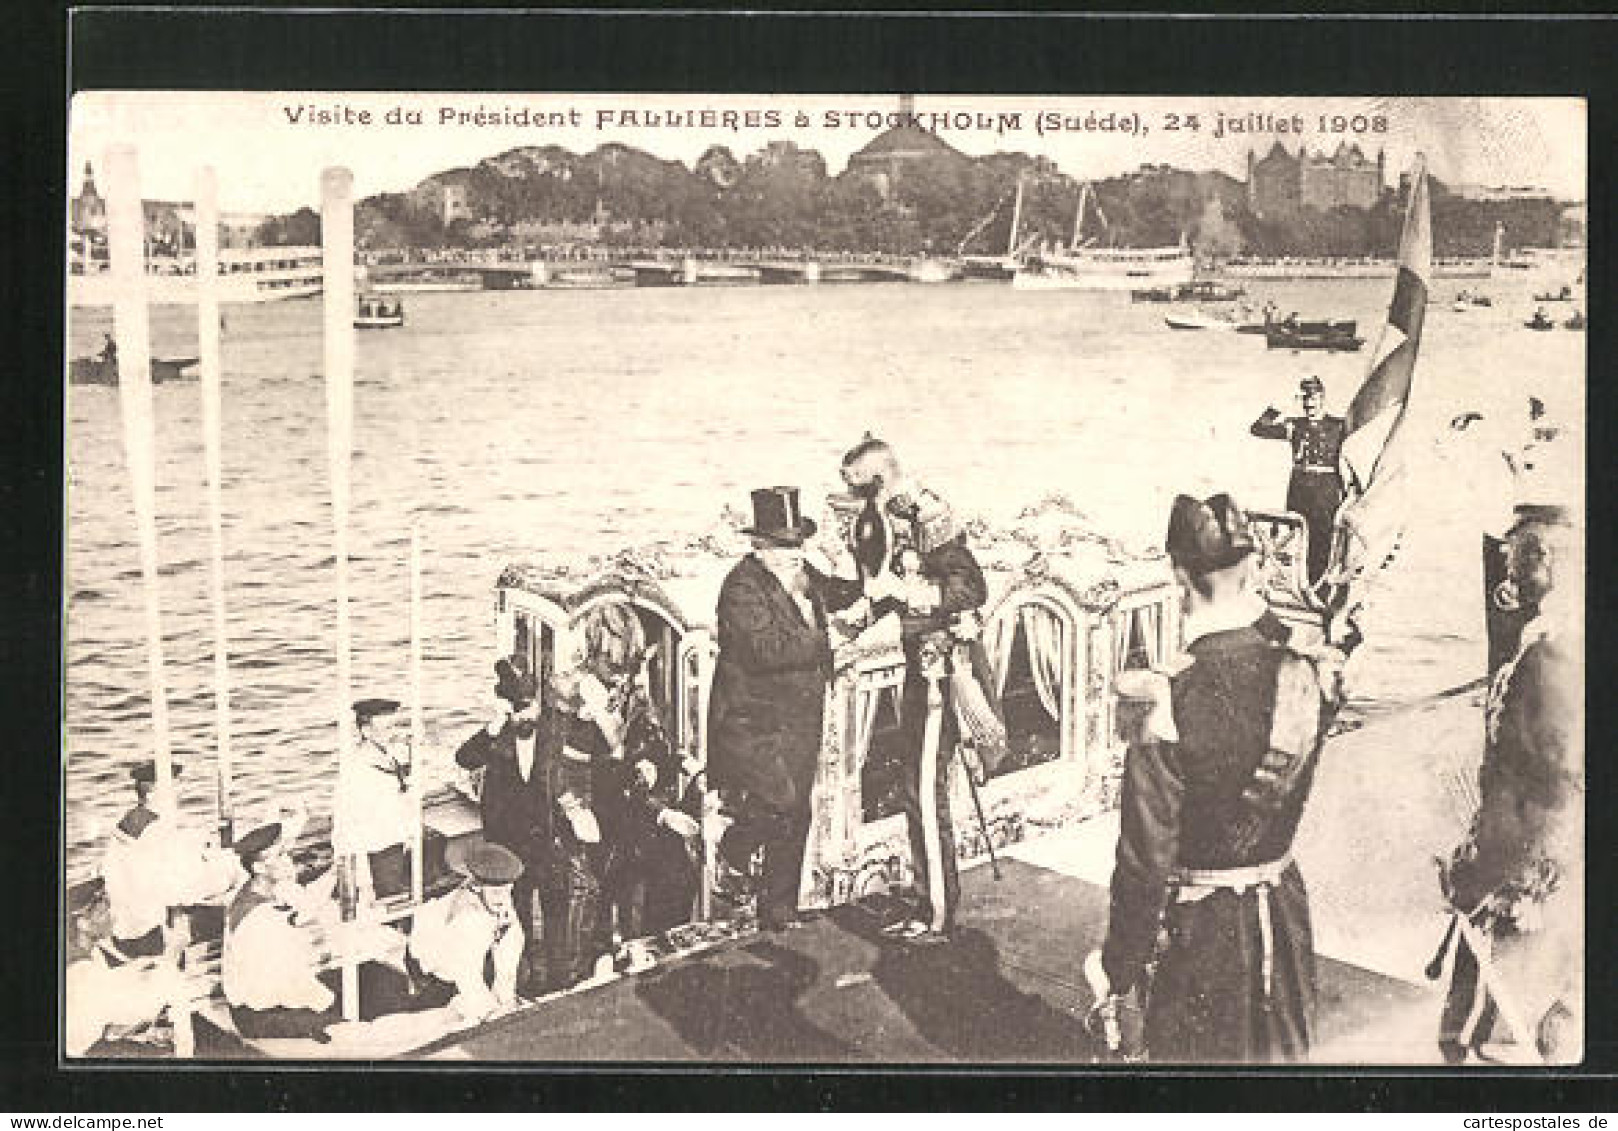 CPA Frankreich, Visite Du President Fallieres A STockholm 24 Juillet 1908  - Politicians & Soldiers